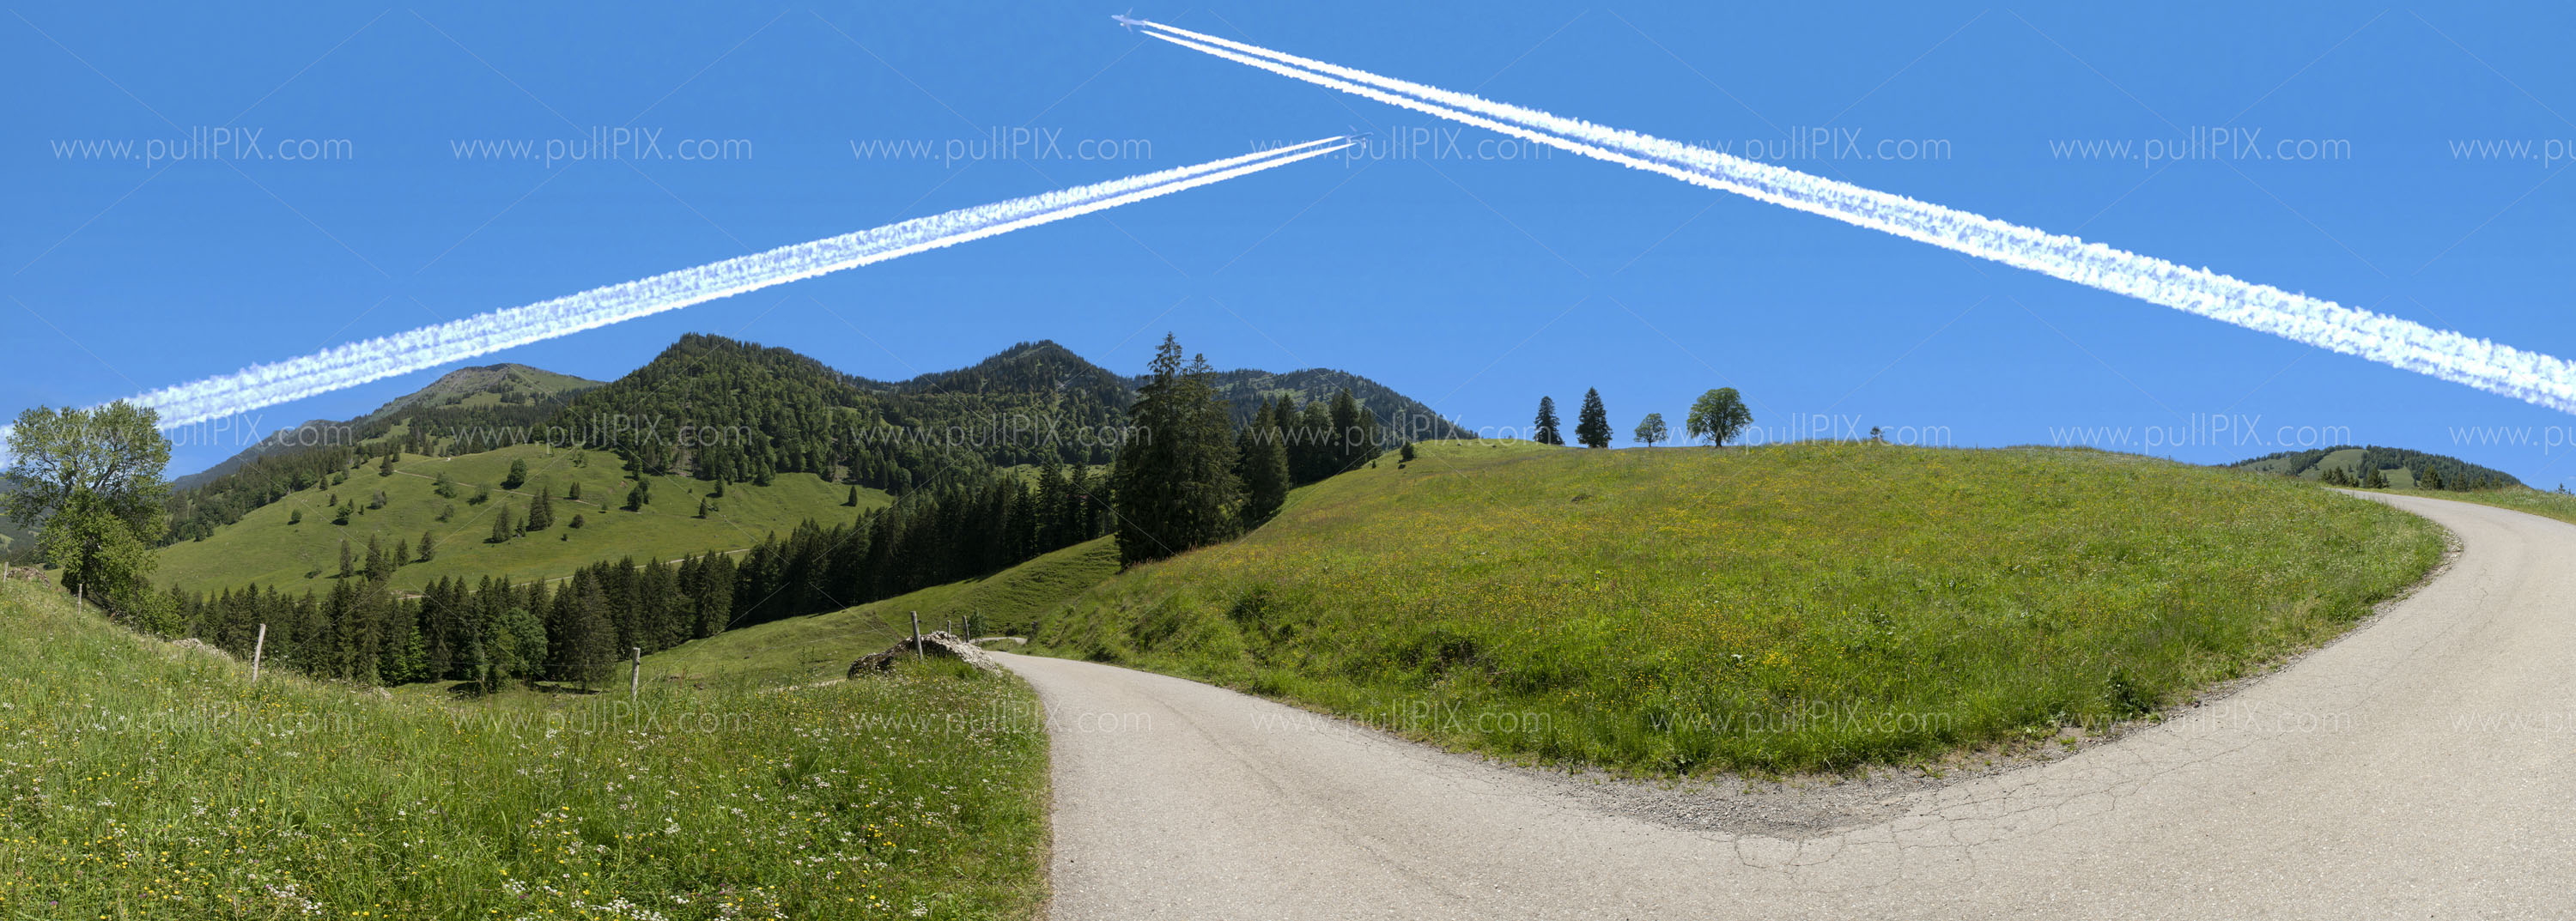 Preview Algaeuer Gebirge mit Flugzeug.jpg